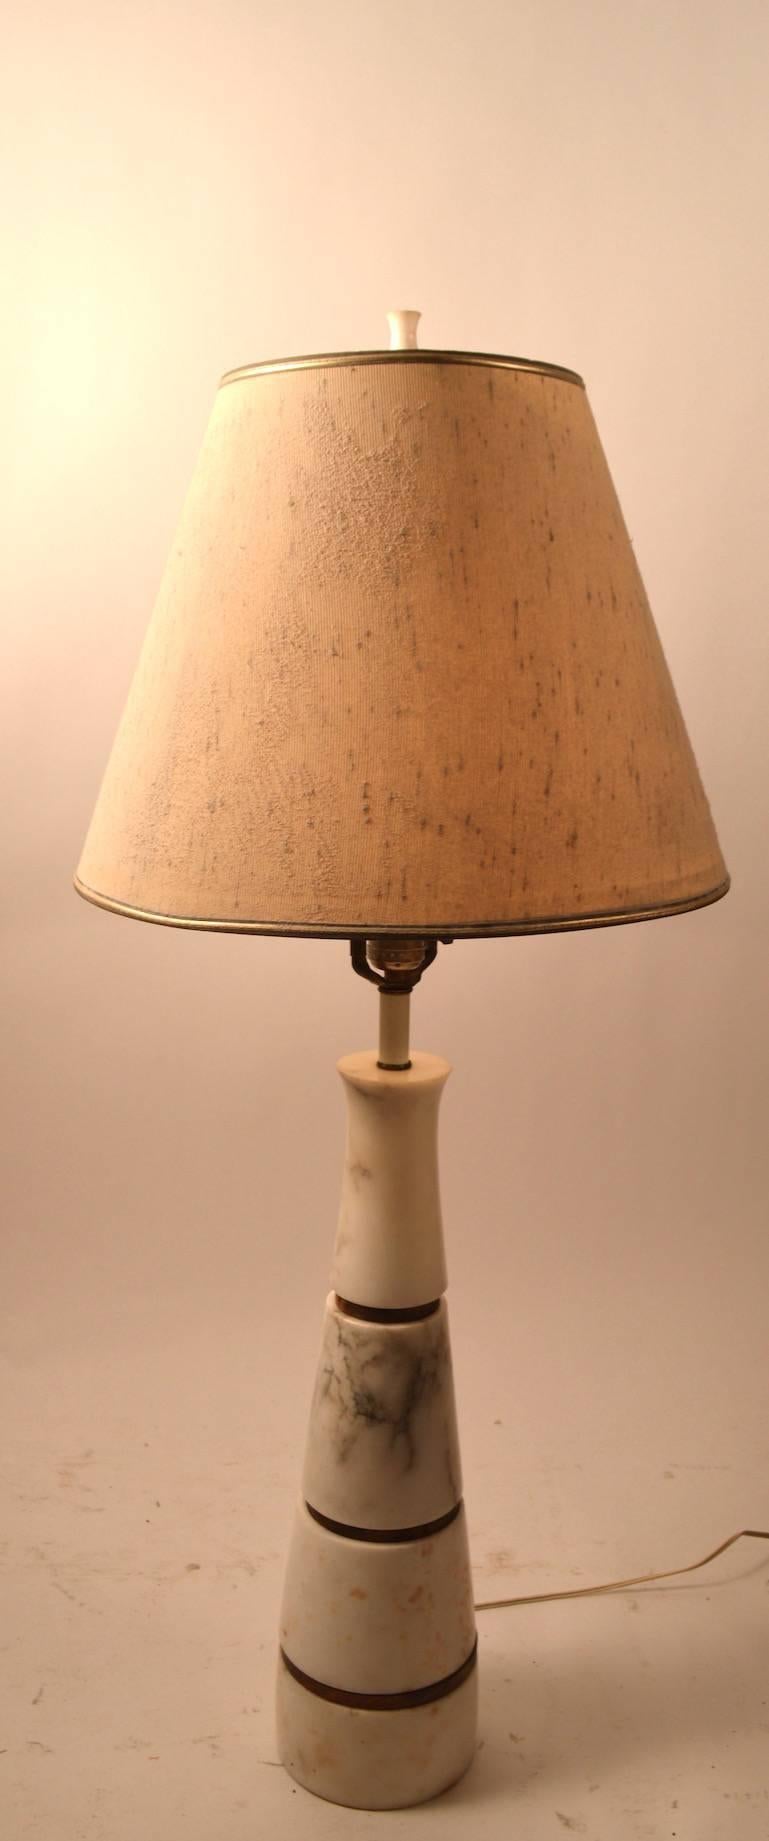 Belle lampe de table moderniste en marbre empilé, marquée 